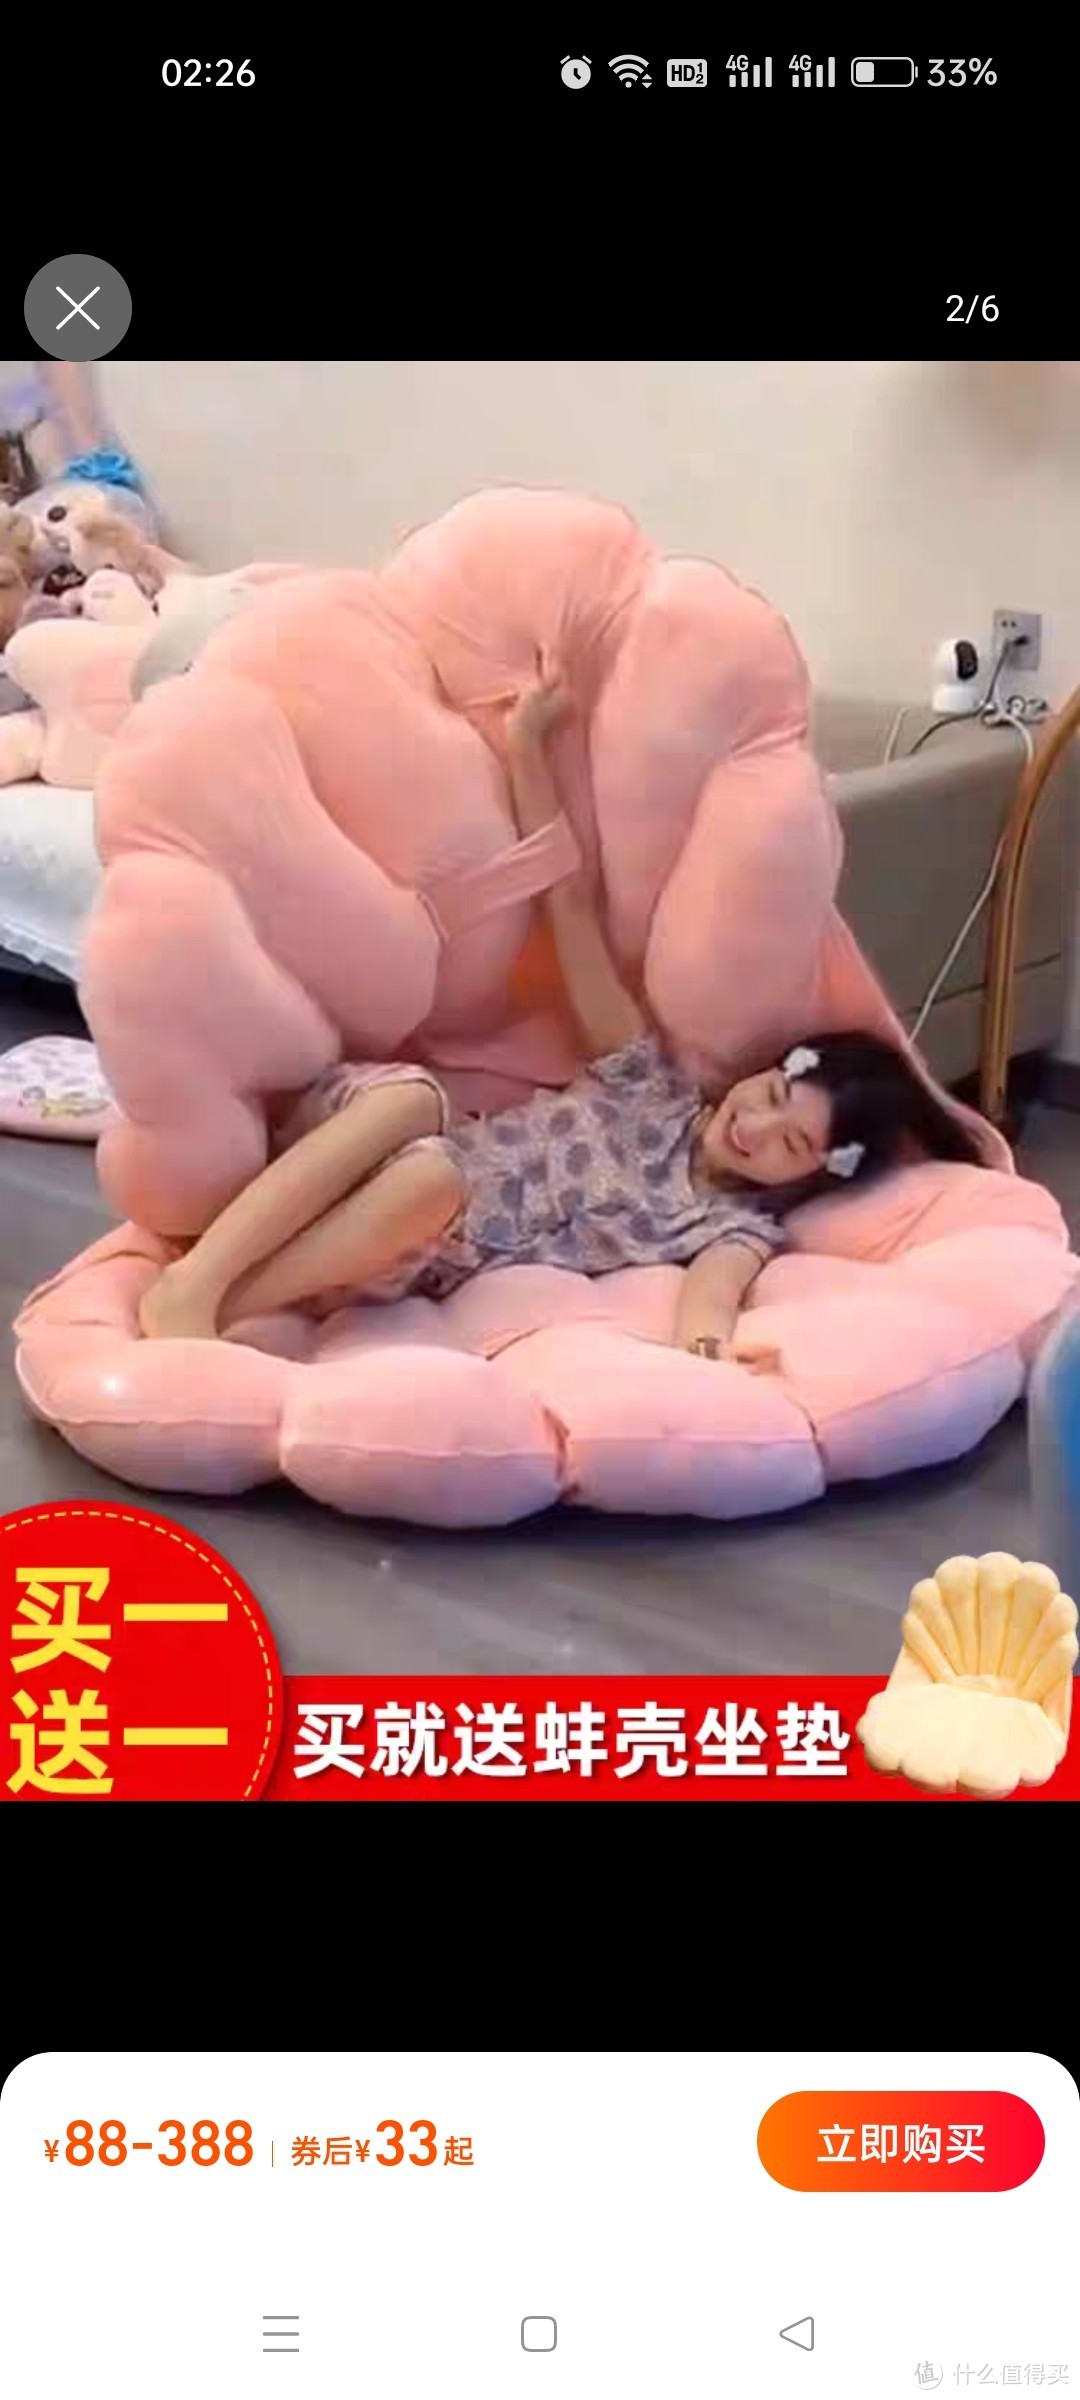 巨型蚌壳抱枕懒人睡觉超大贝壳玩偶毛绒被子坐垫垫子睡袋沙发玩具